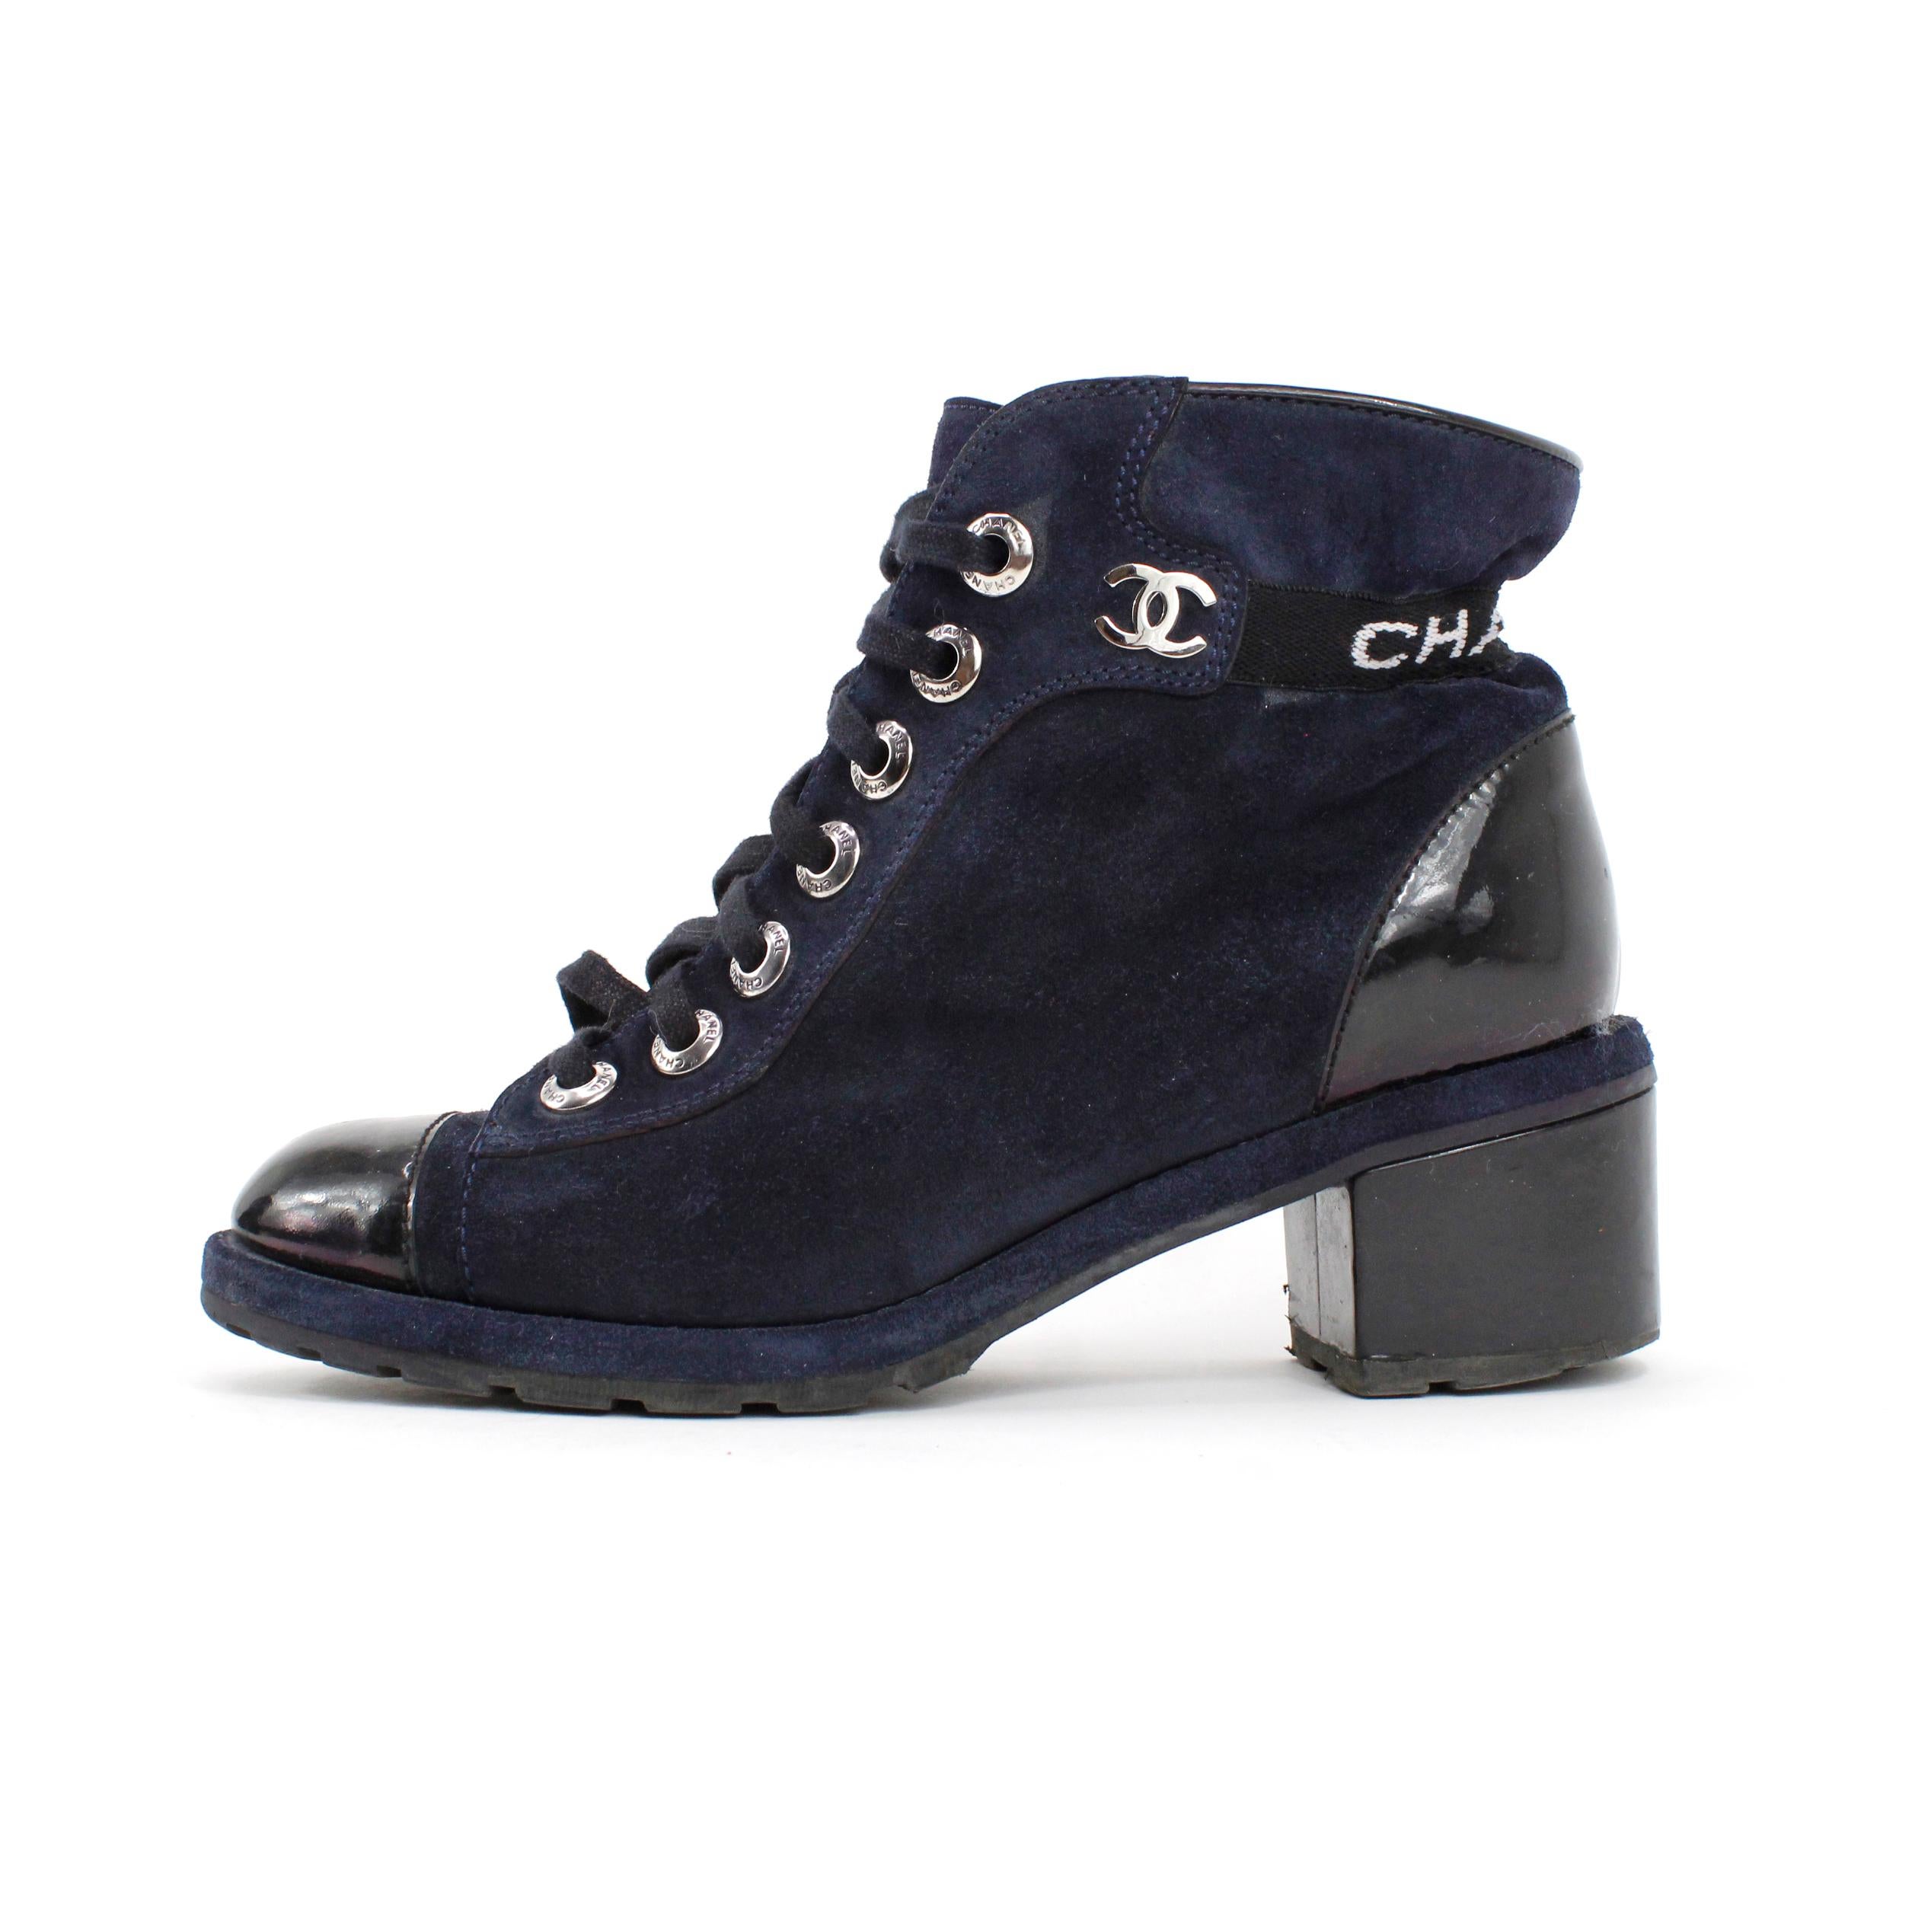 Chanel Stiefel aus Veloursleder + Lackleder, Farbe blau und schwarz. Größe 37,5 EU.

Bedingung: 
Wirklich gut, leichte Kratzer auf dem Lackleder.